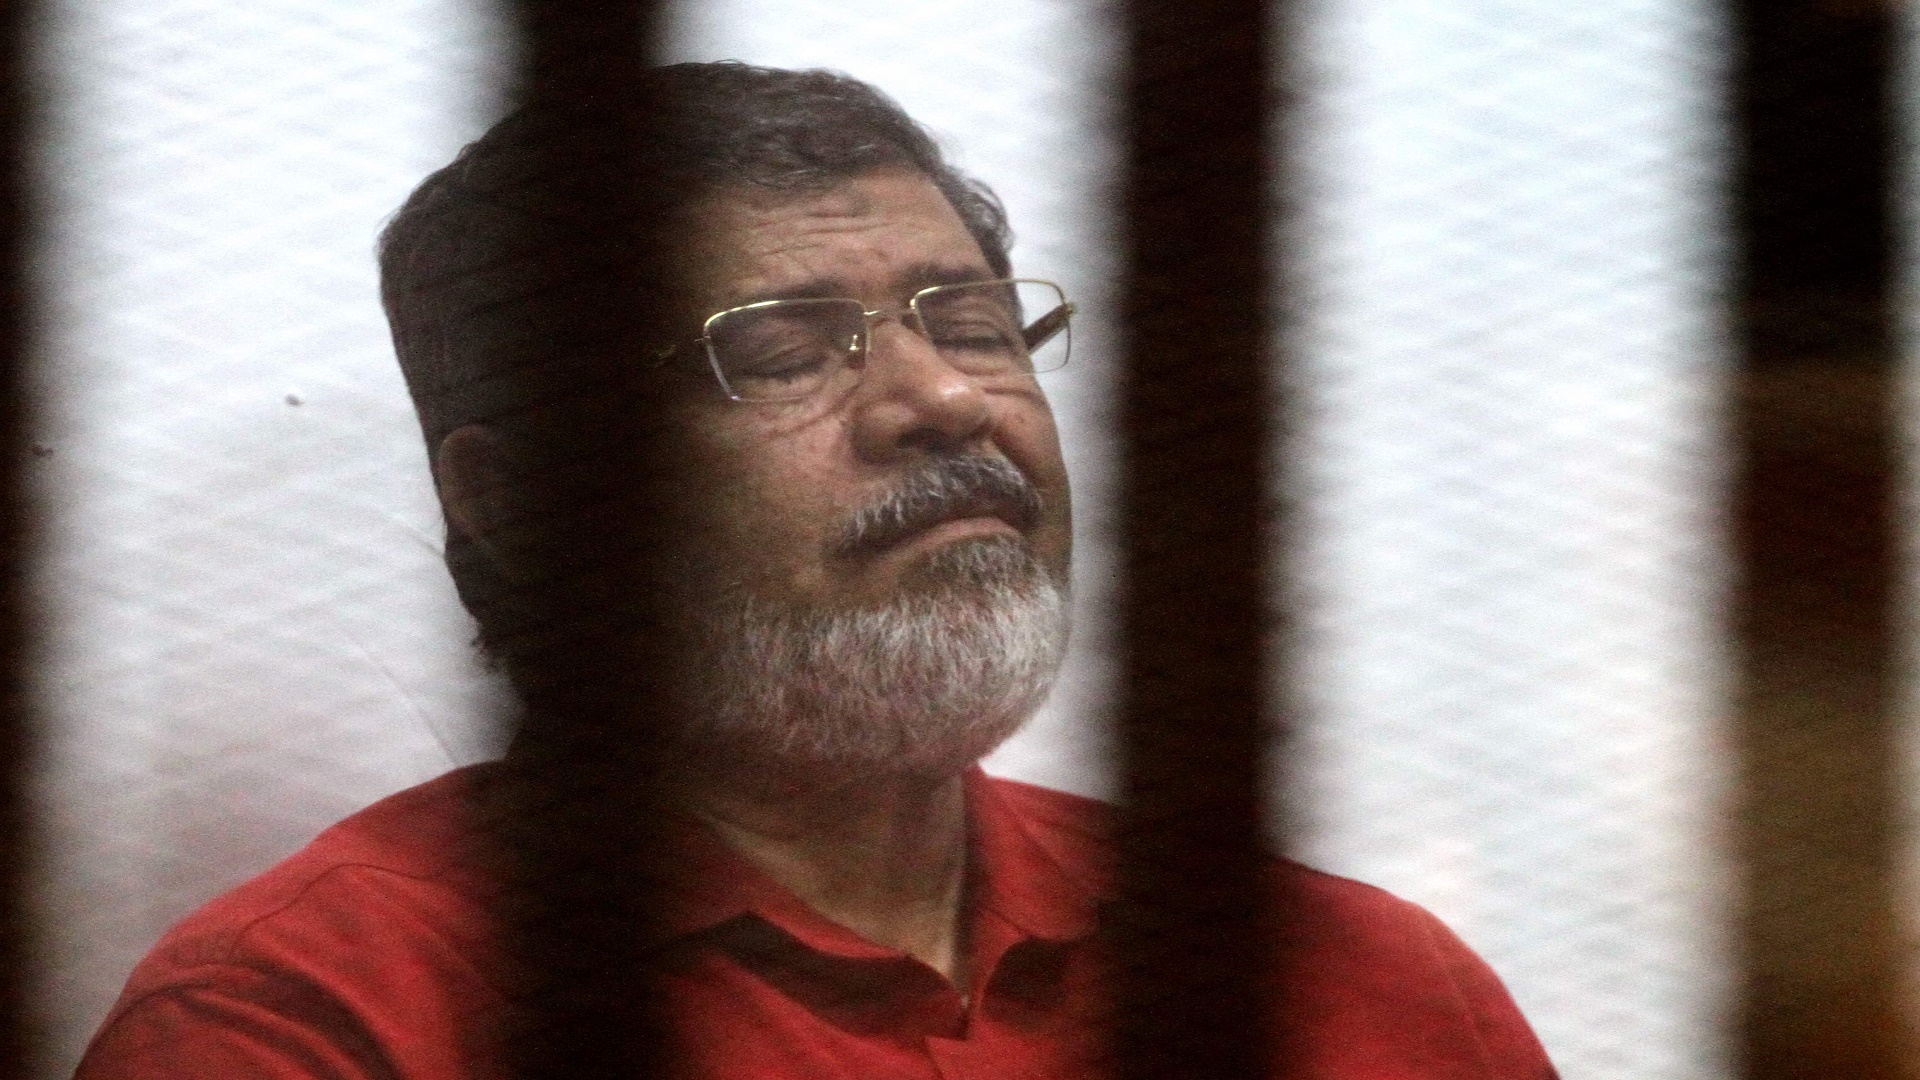 ما بين الوقوف بثبات أو التسليم وبين بقاء النظام وزواله.. كيف كانت مواقف "مرسي" و"بشار الأسد" ؟